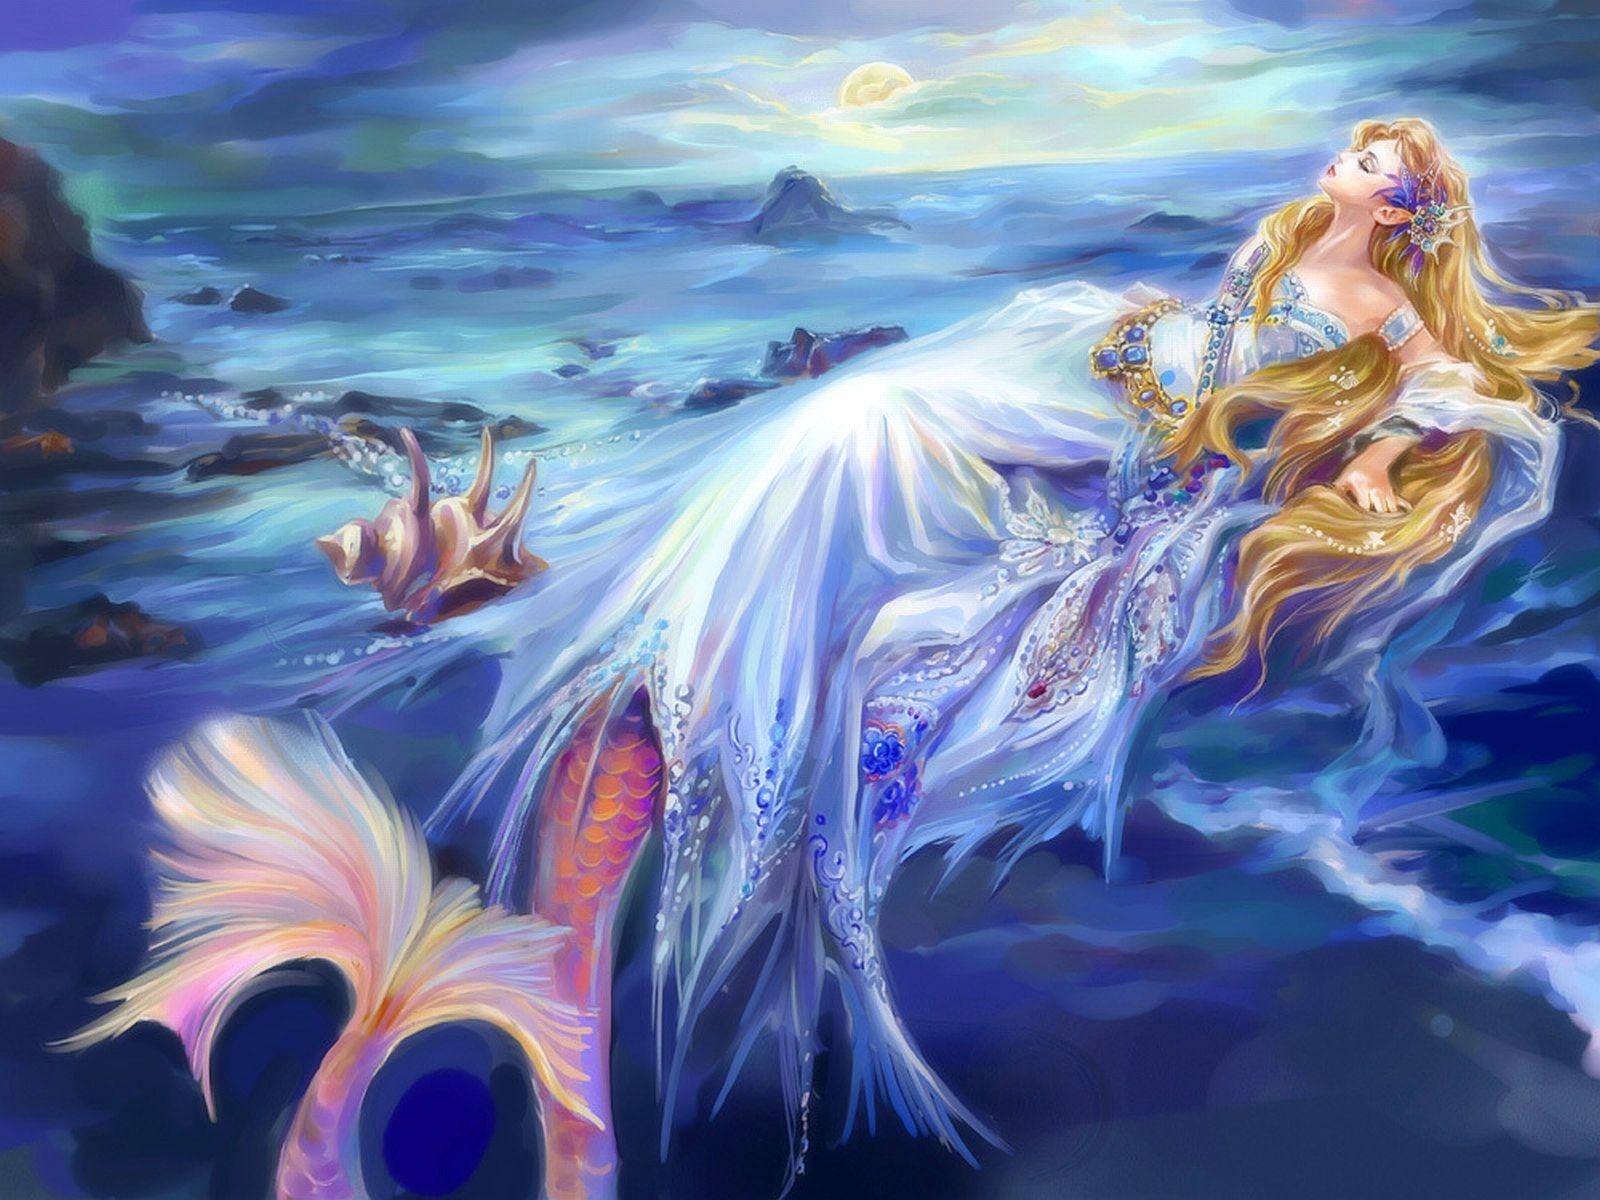 Mermaid Computer Wallpaper, Desktop Backgroundx1200. Mermaid wallpaper background, Anime mermaid, Mermaid wallpaper